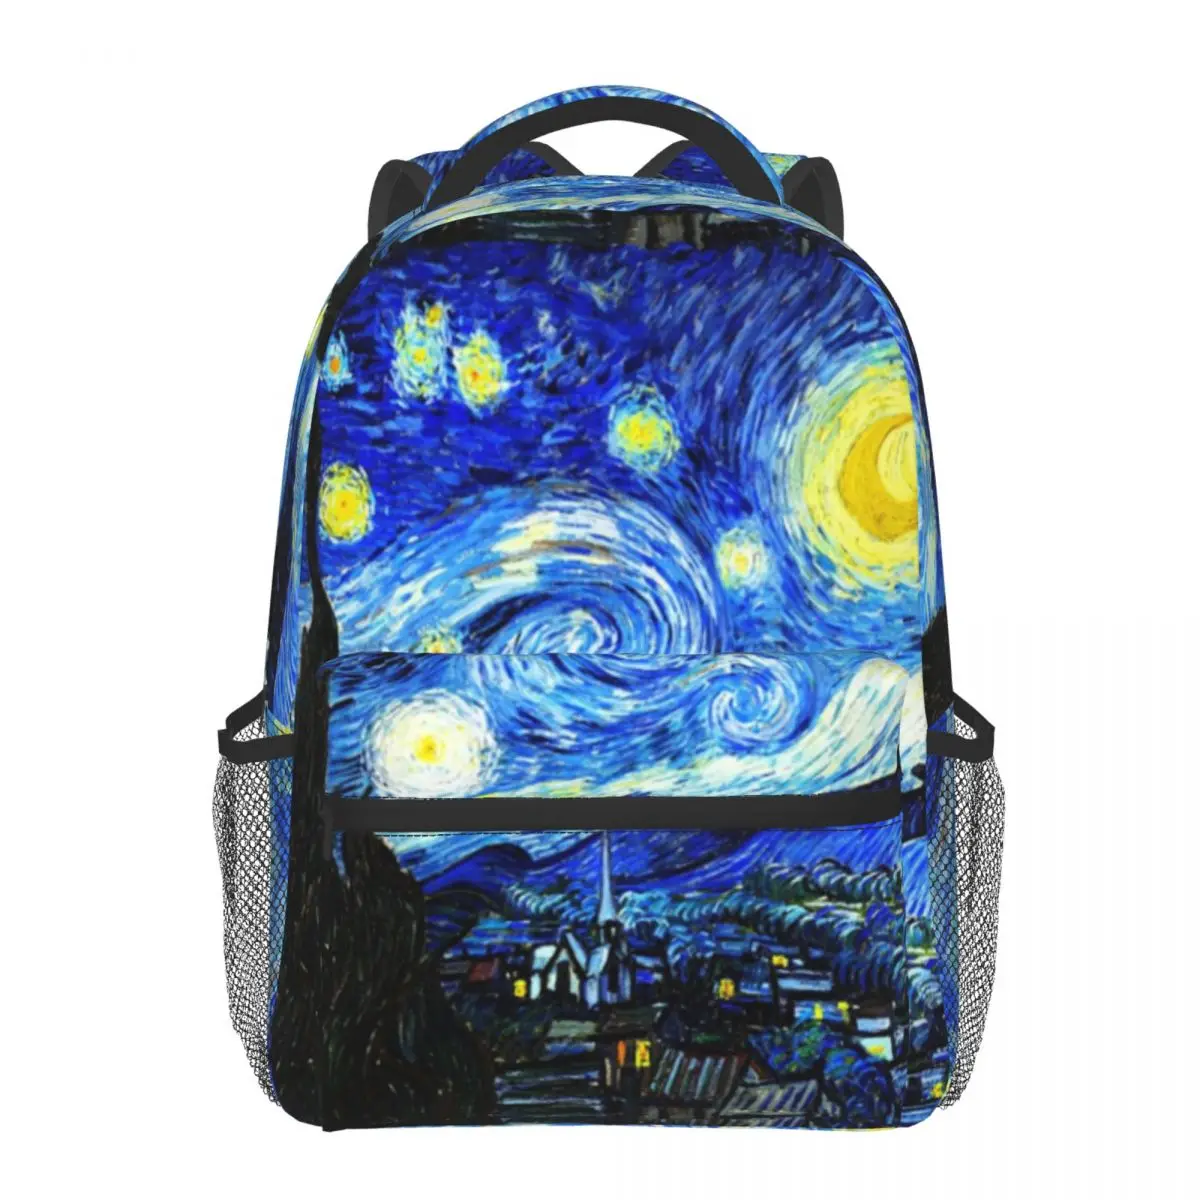 

Starry Night Backpack Men Women School Bags Teenage Travel Rucksack Large Capacity